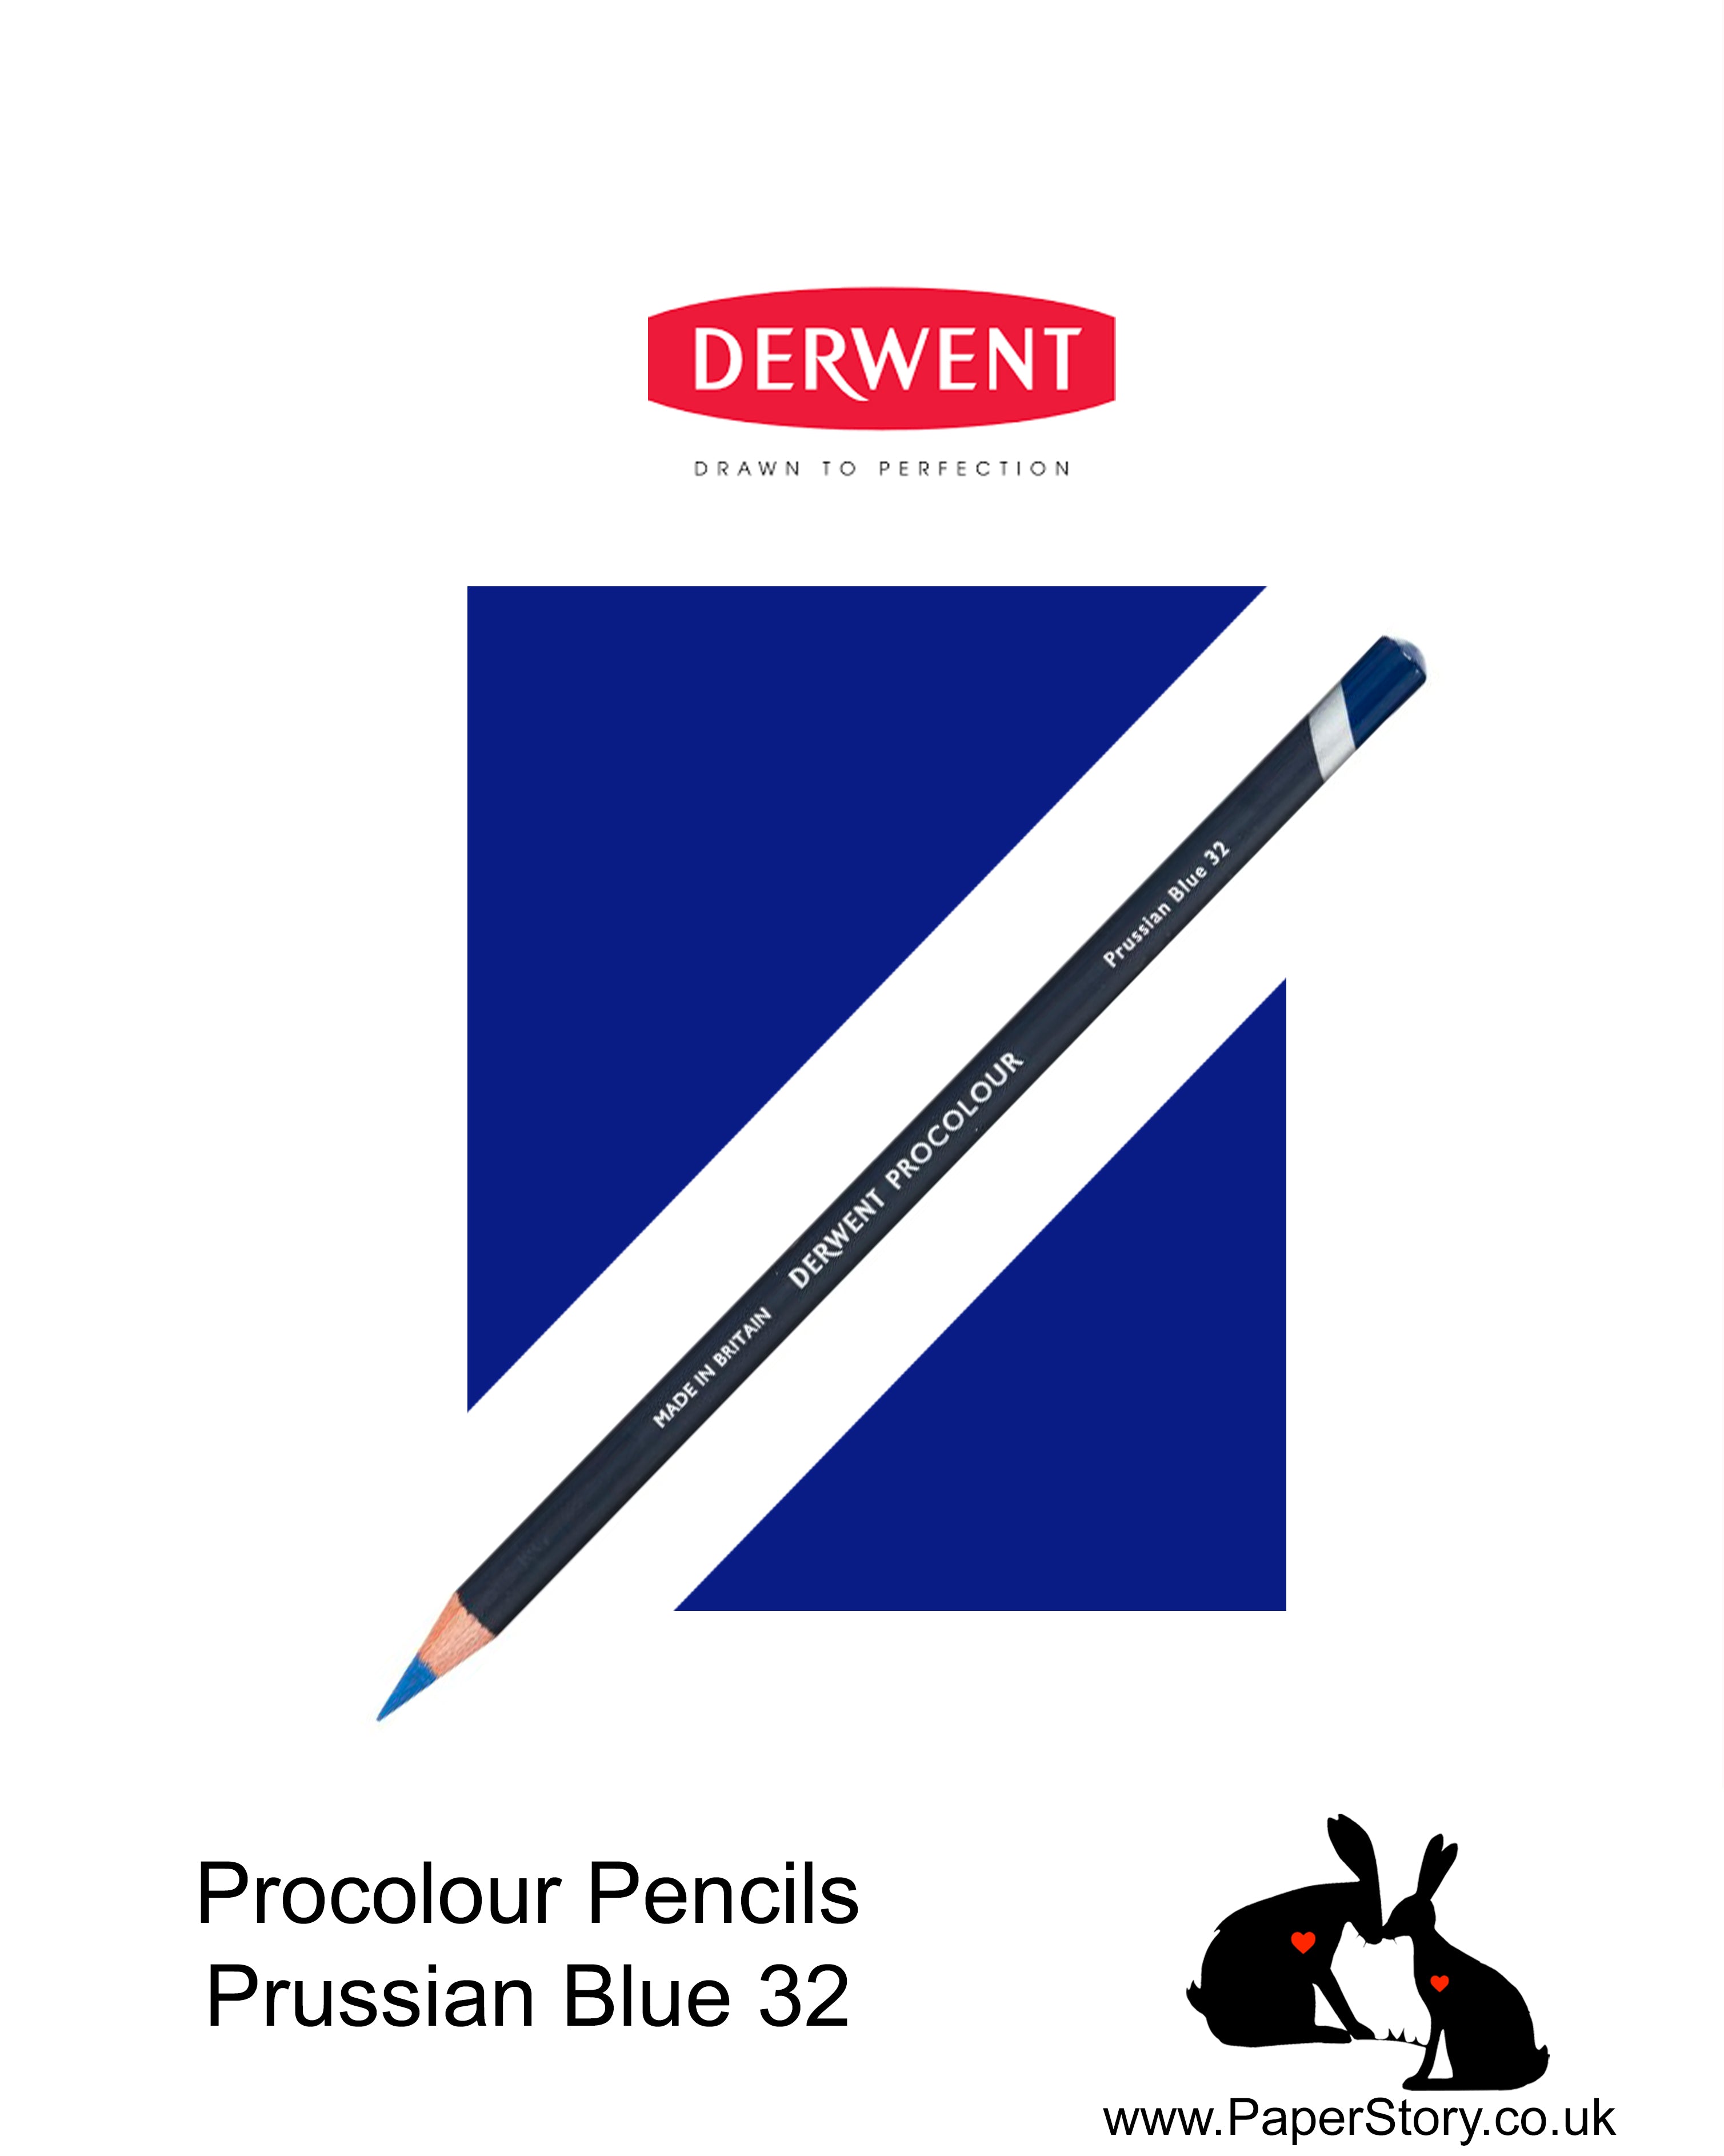 Derwent Procolour pencil Prussian Blue 32